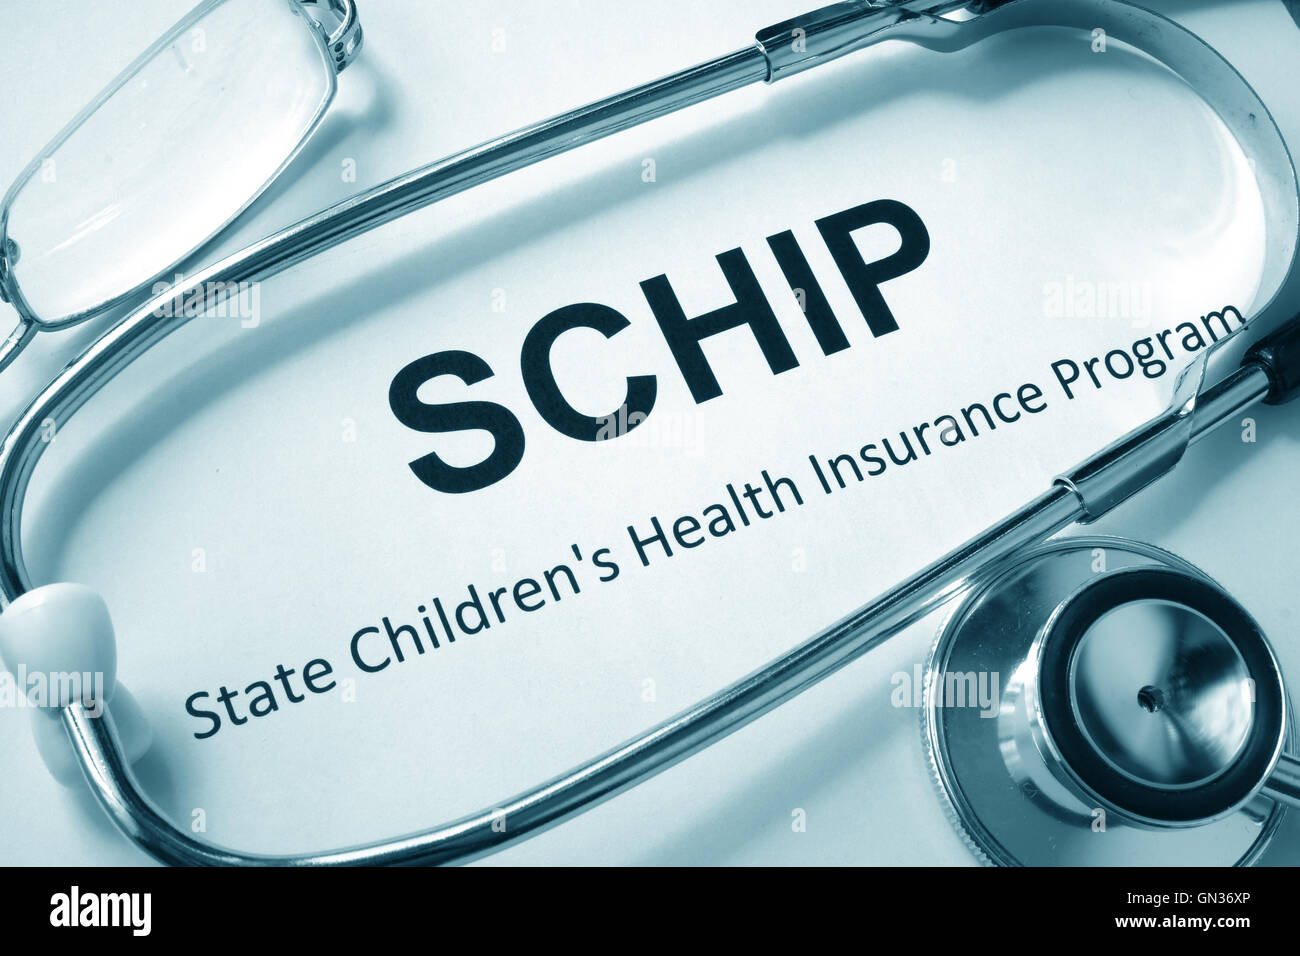 Papier mit Worten SCHIP staatliche Krankenversicherung Kinderprogramm. Stockfoto